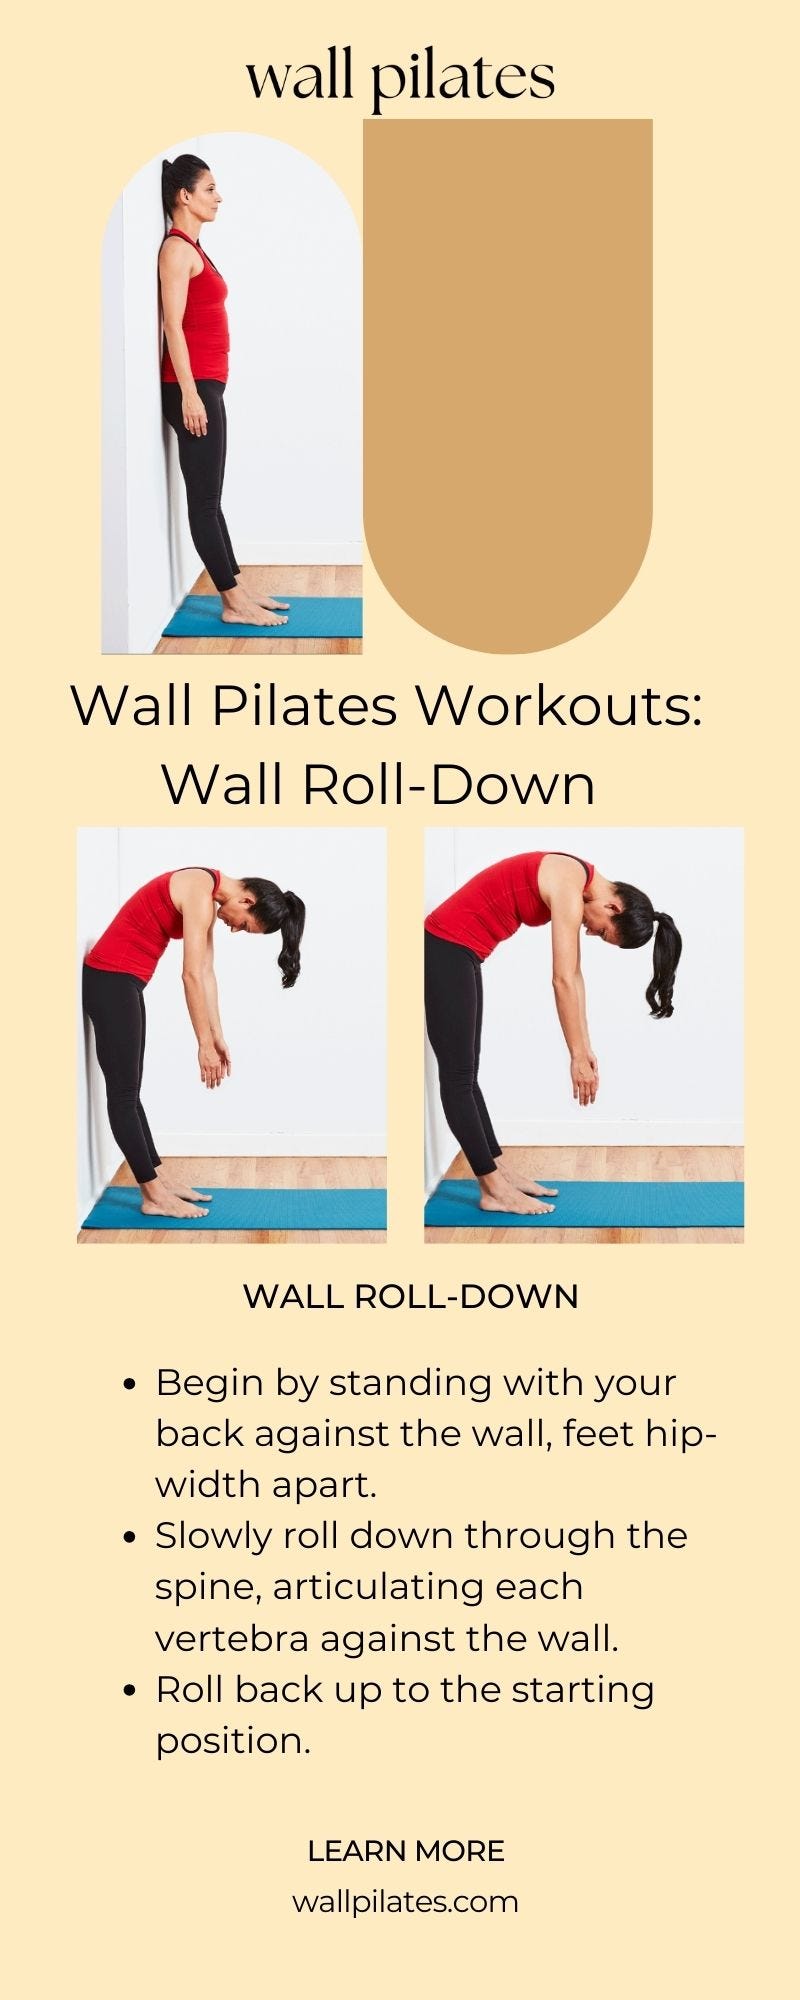 Beginner Weight Loss Workouts - Wall Pilates - Medium